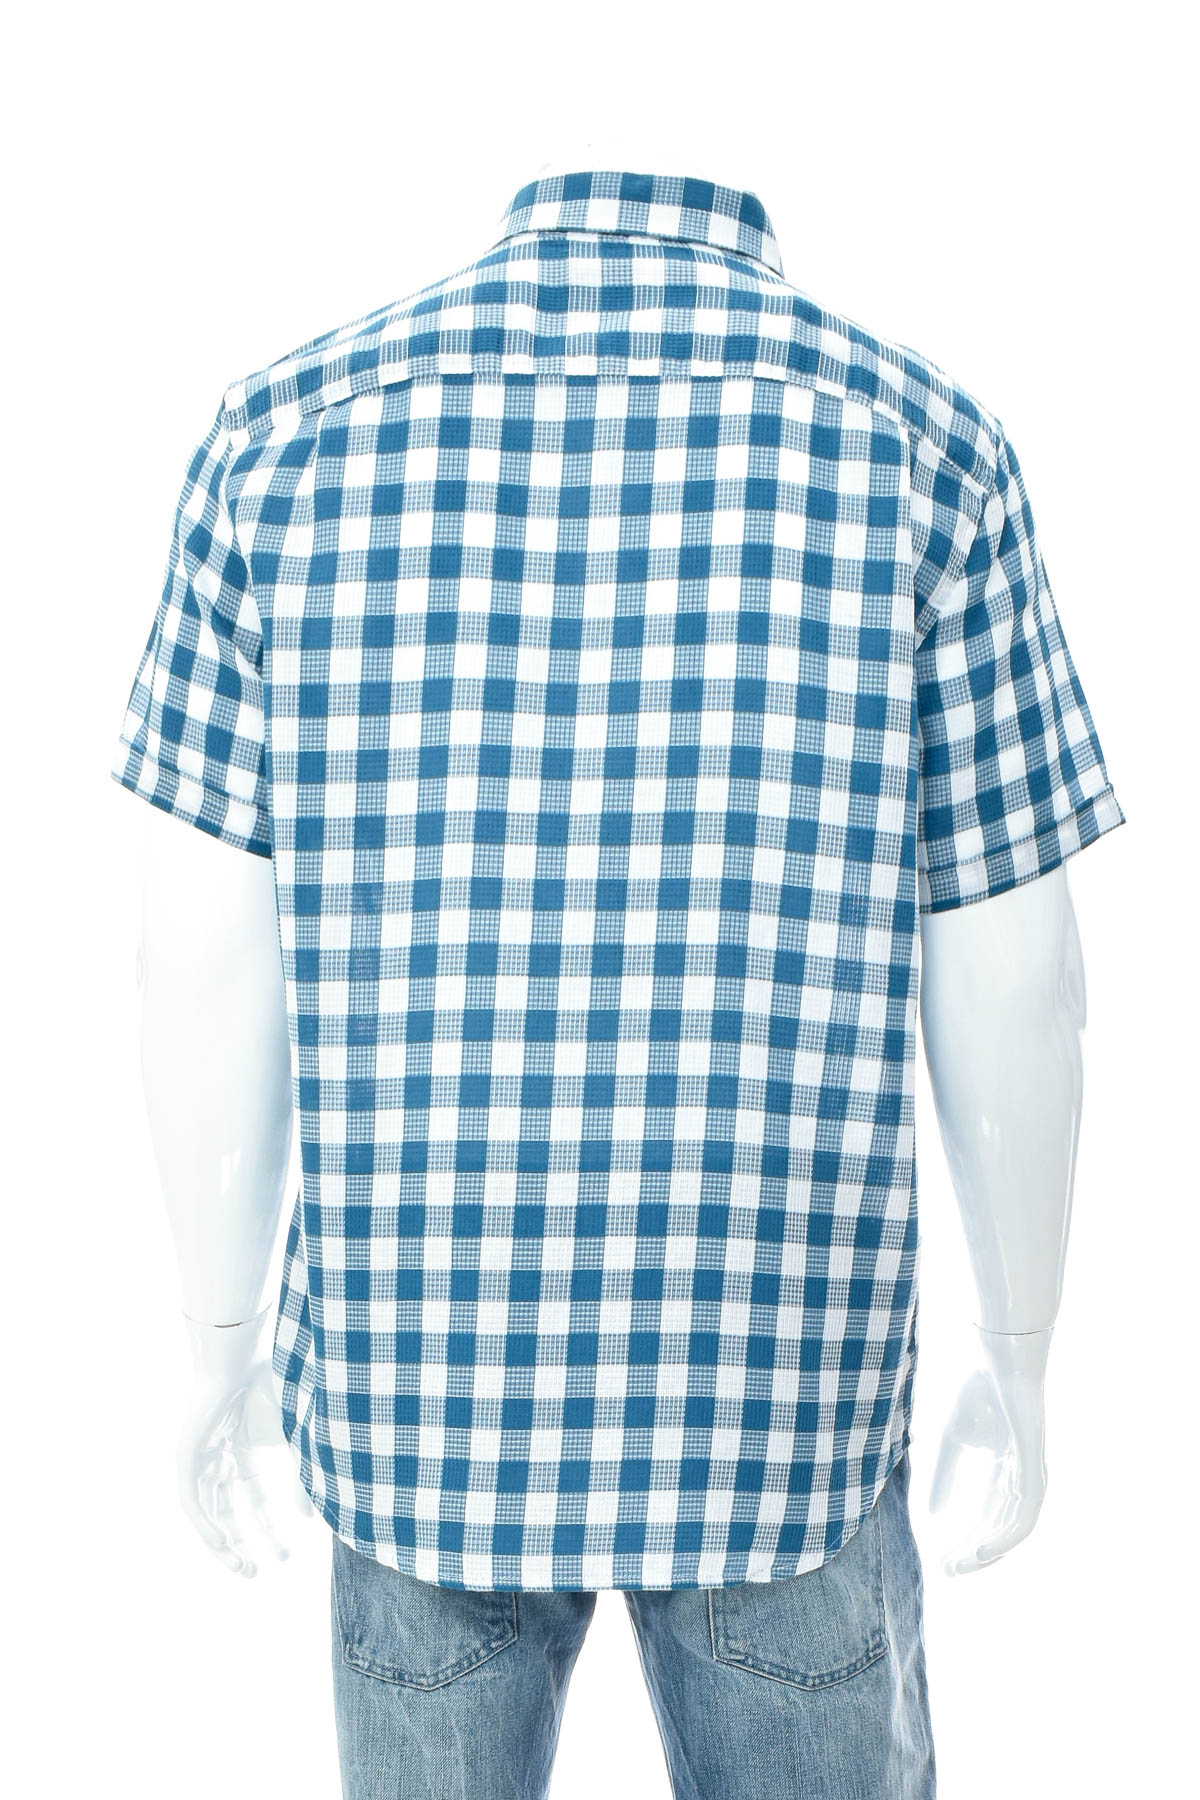 Men's shirt - LC Waikiki - 1